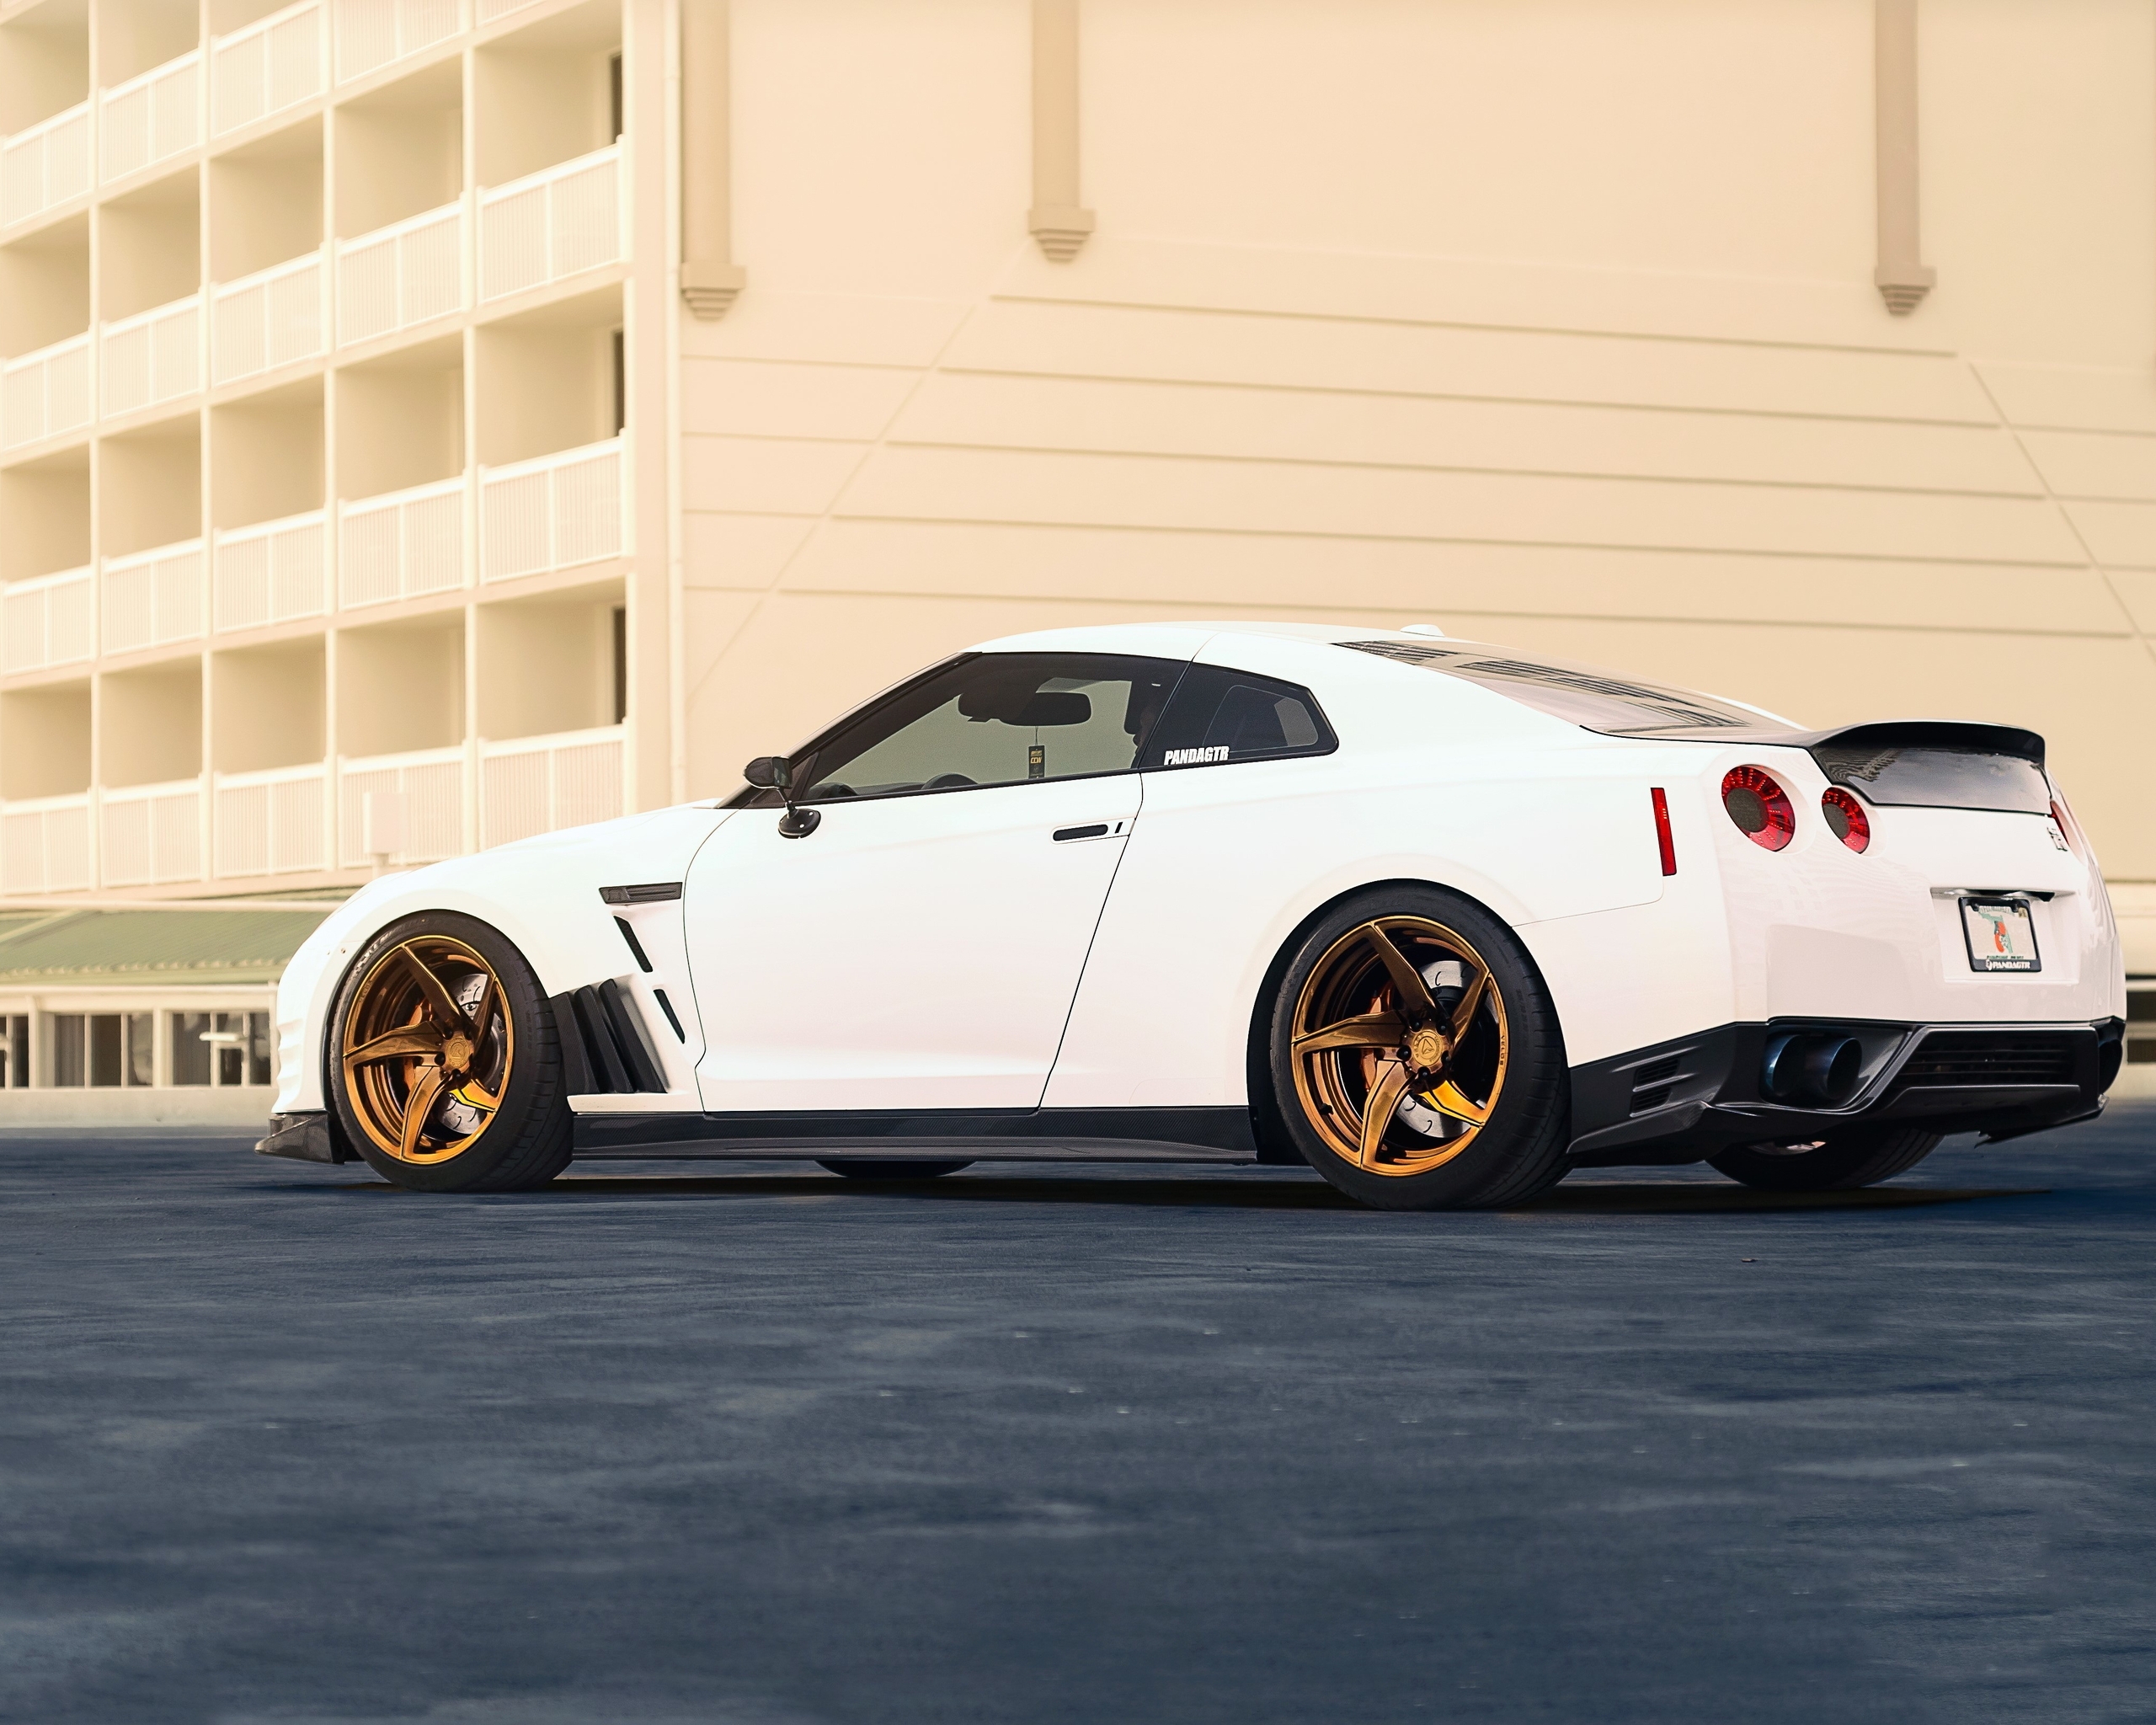 Картинка: Nissan, белый, GT-R, здание, асфальт, литьё, суперкар